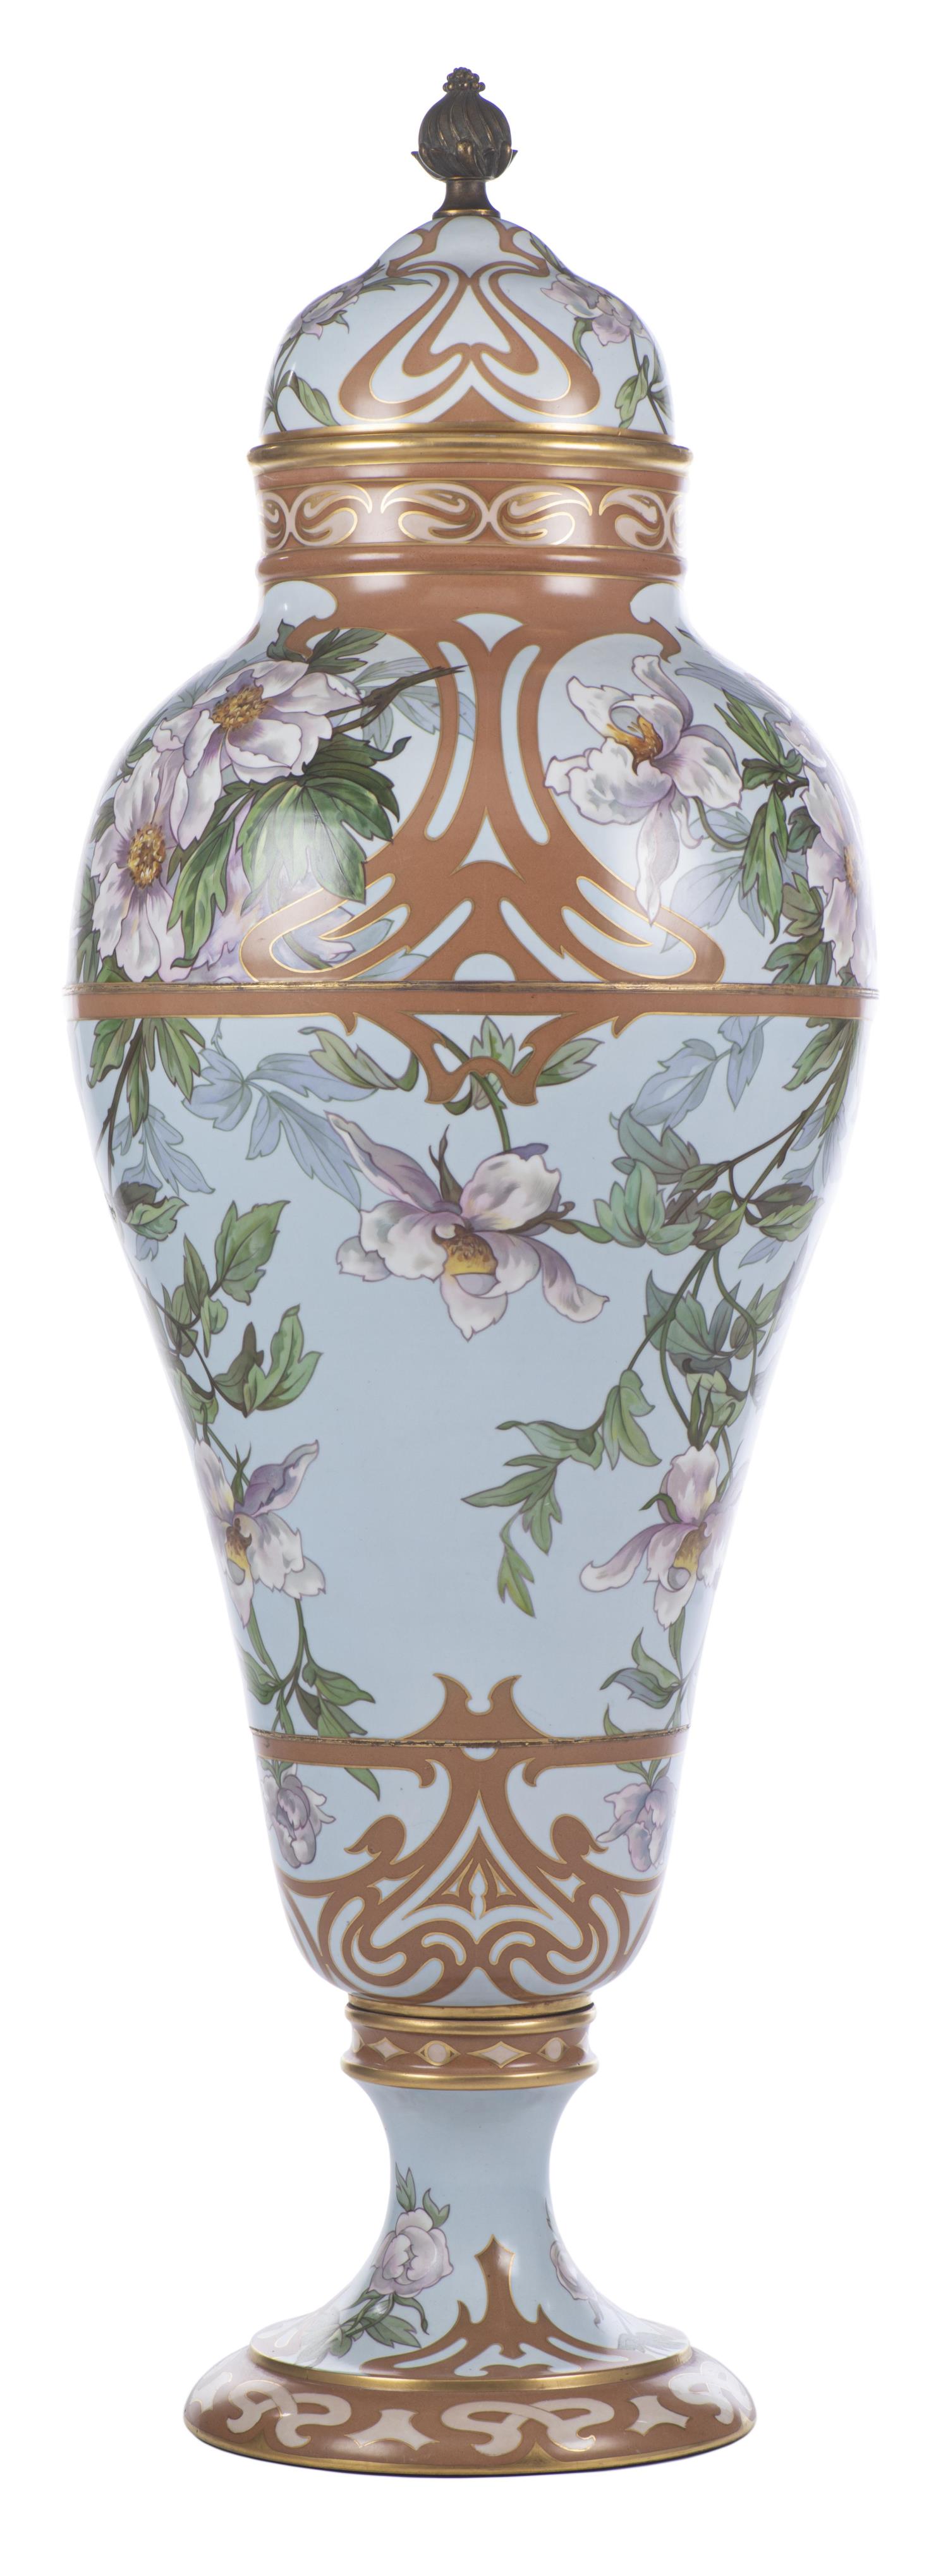 Grand vase en porcelaine de Limoges France par W.G. & Co par W. Guerin & Cie - Image 4 of 18